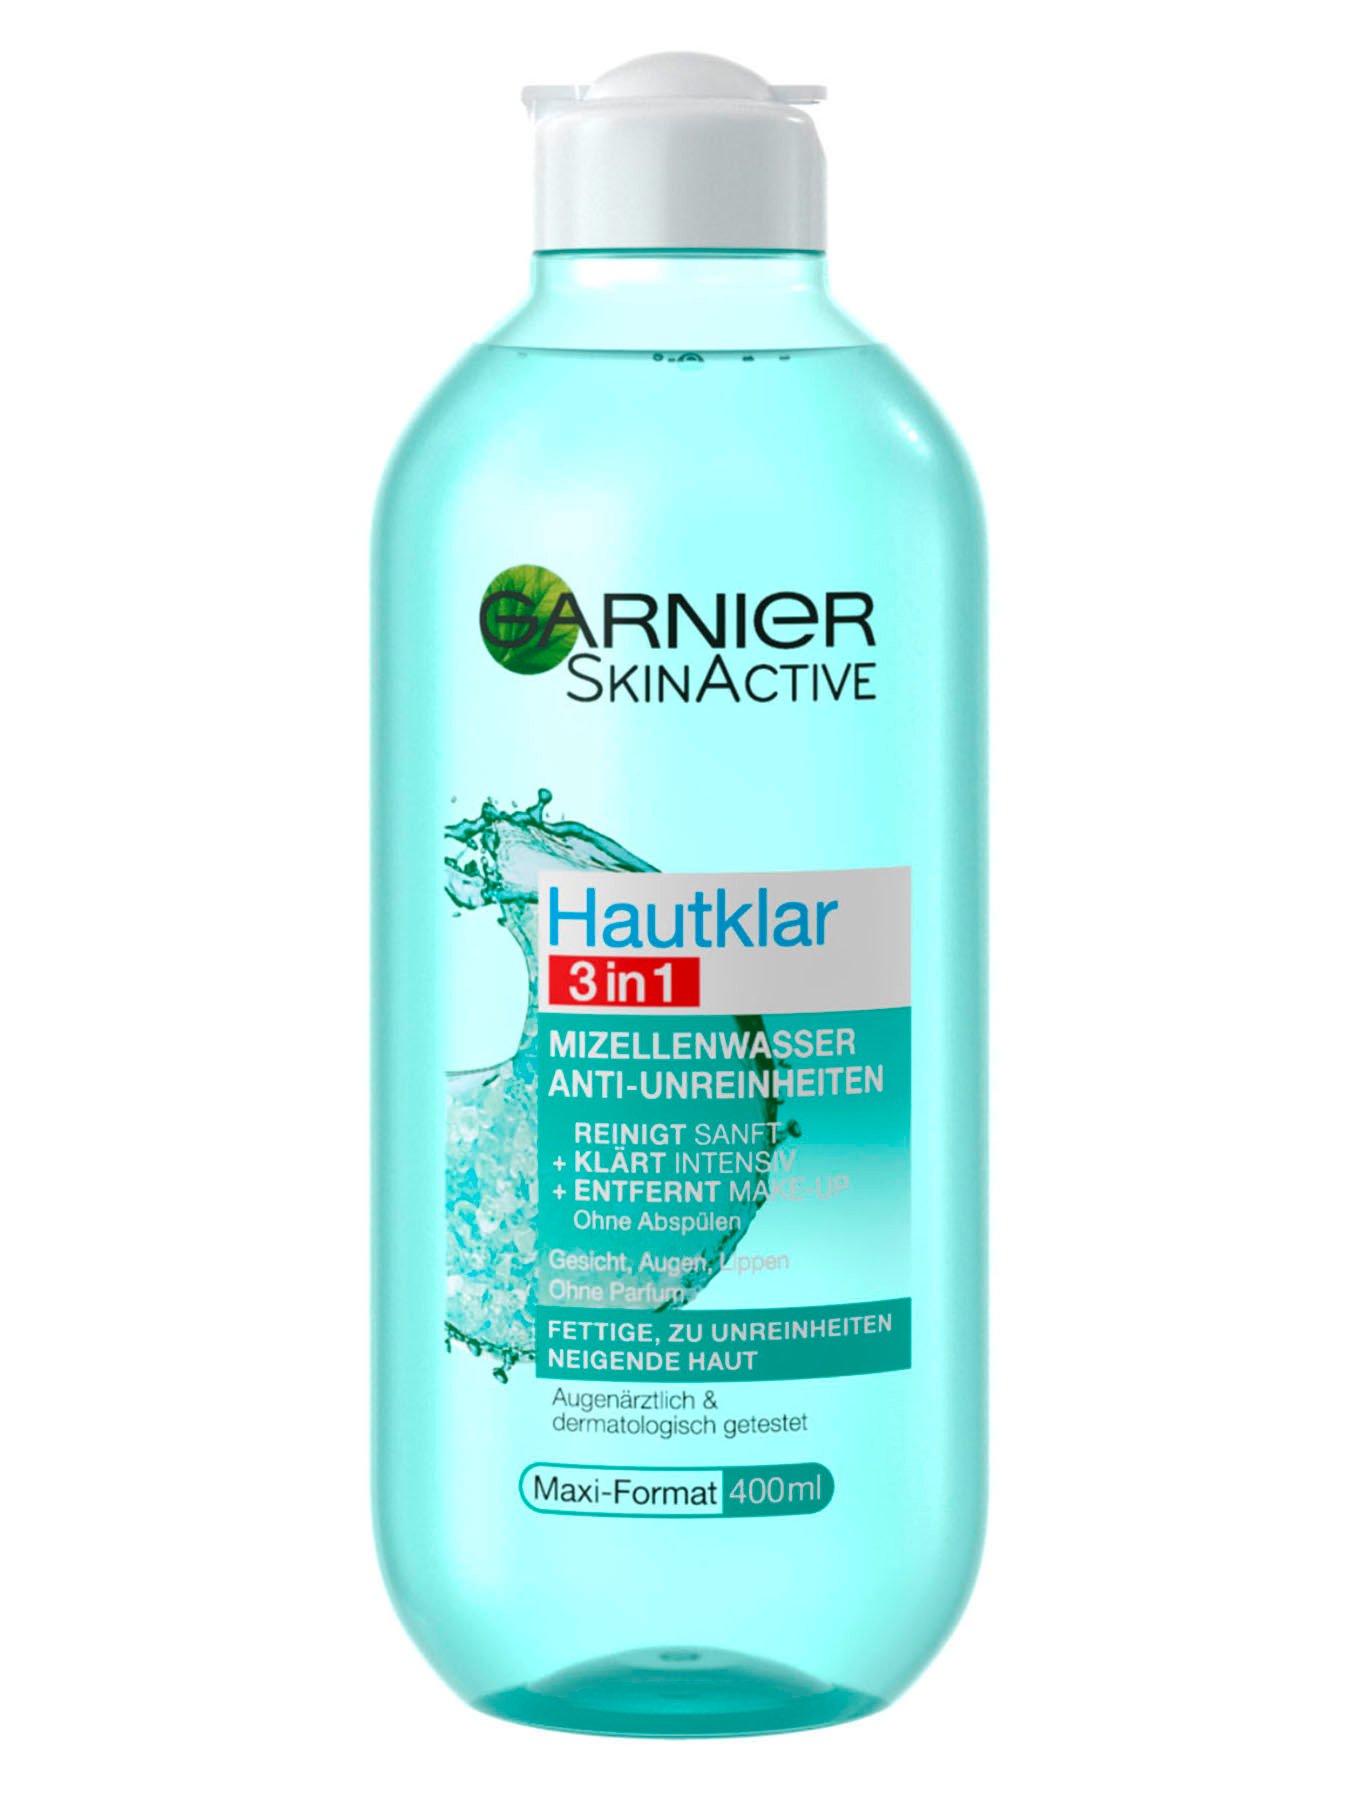 3in1-Mizellenwasser-Anti-Unreinheiten-Hautklar-Anti-Unreinheiten-400ml-Vorderseite-Garnier-DE-gr